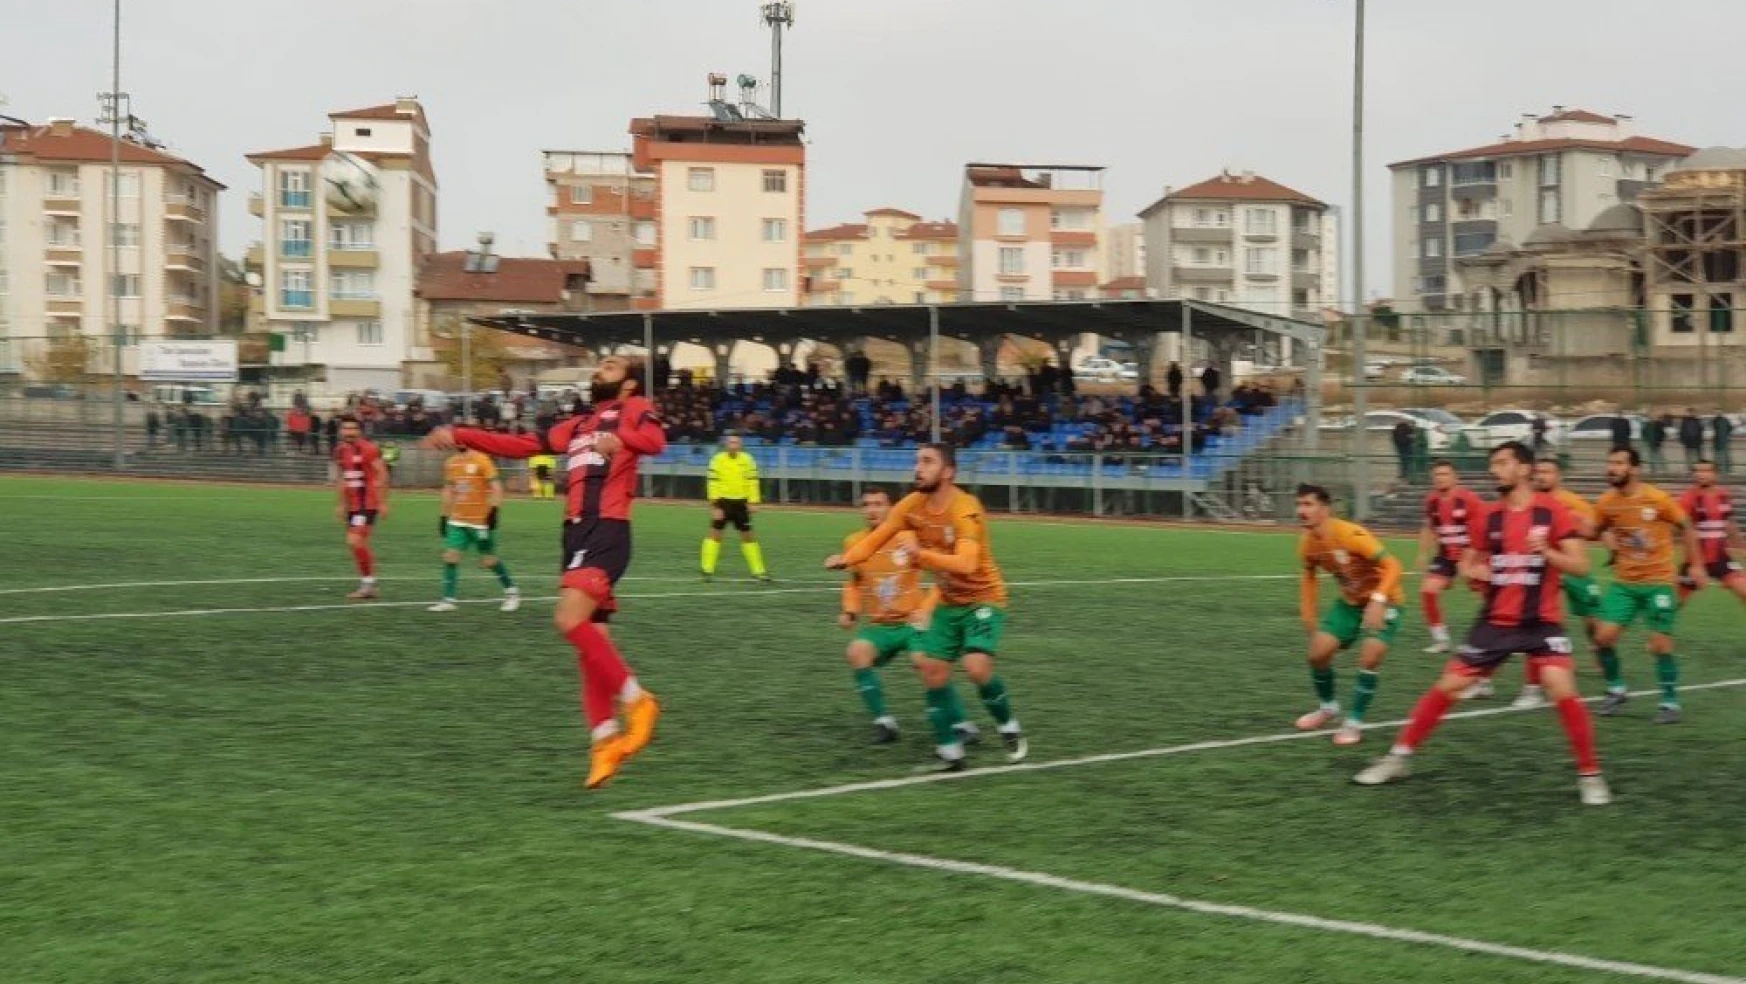 Yeşilyurt Belediyespor, Elbistan'ı 2-0 yendi